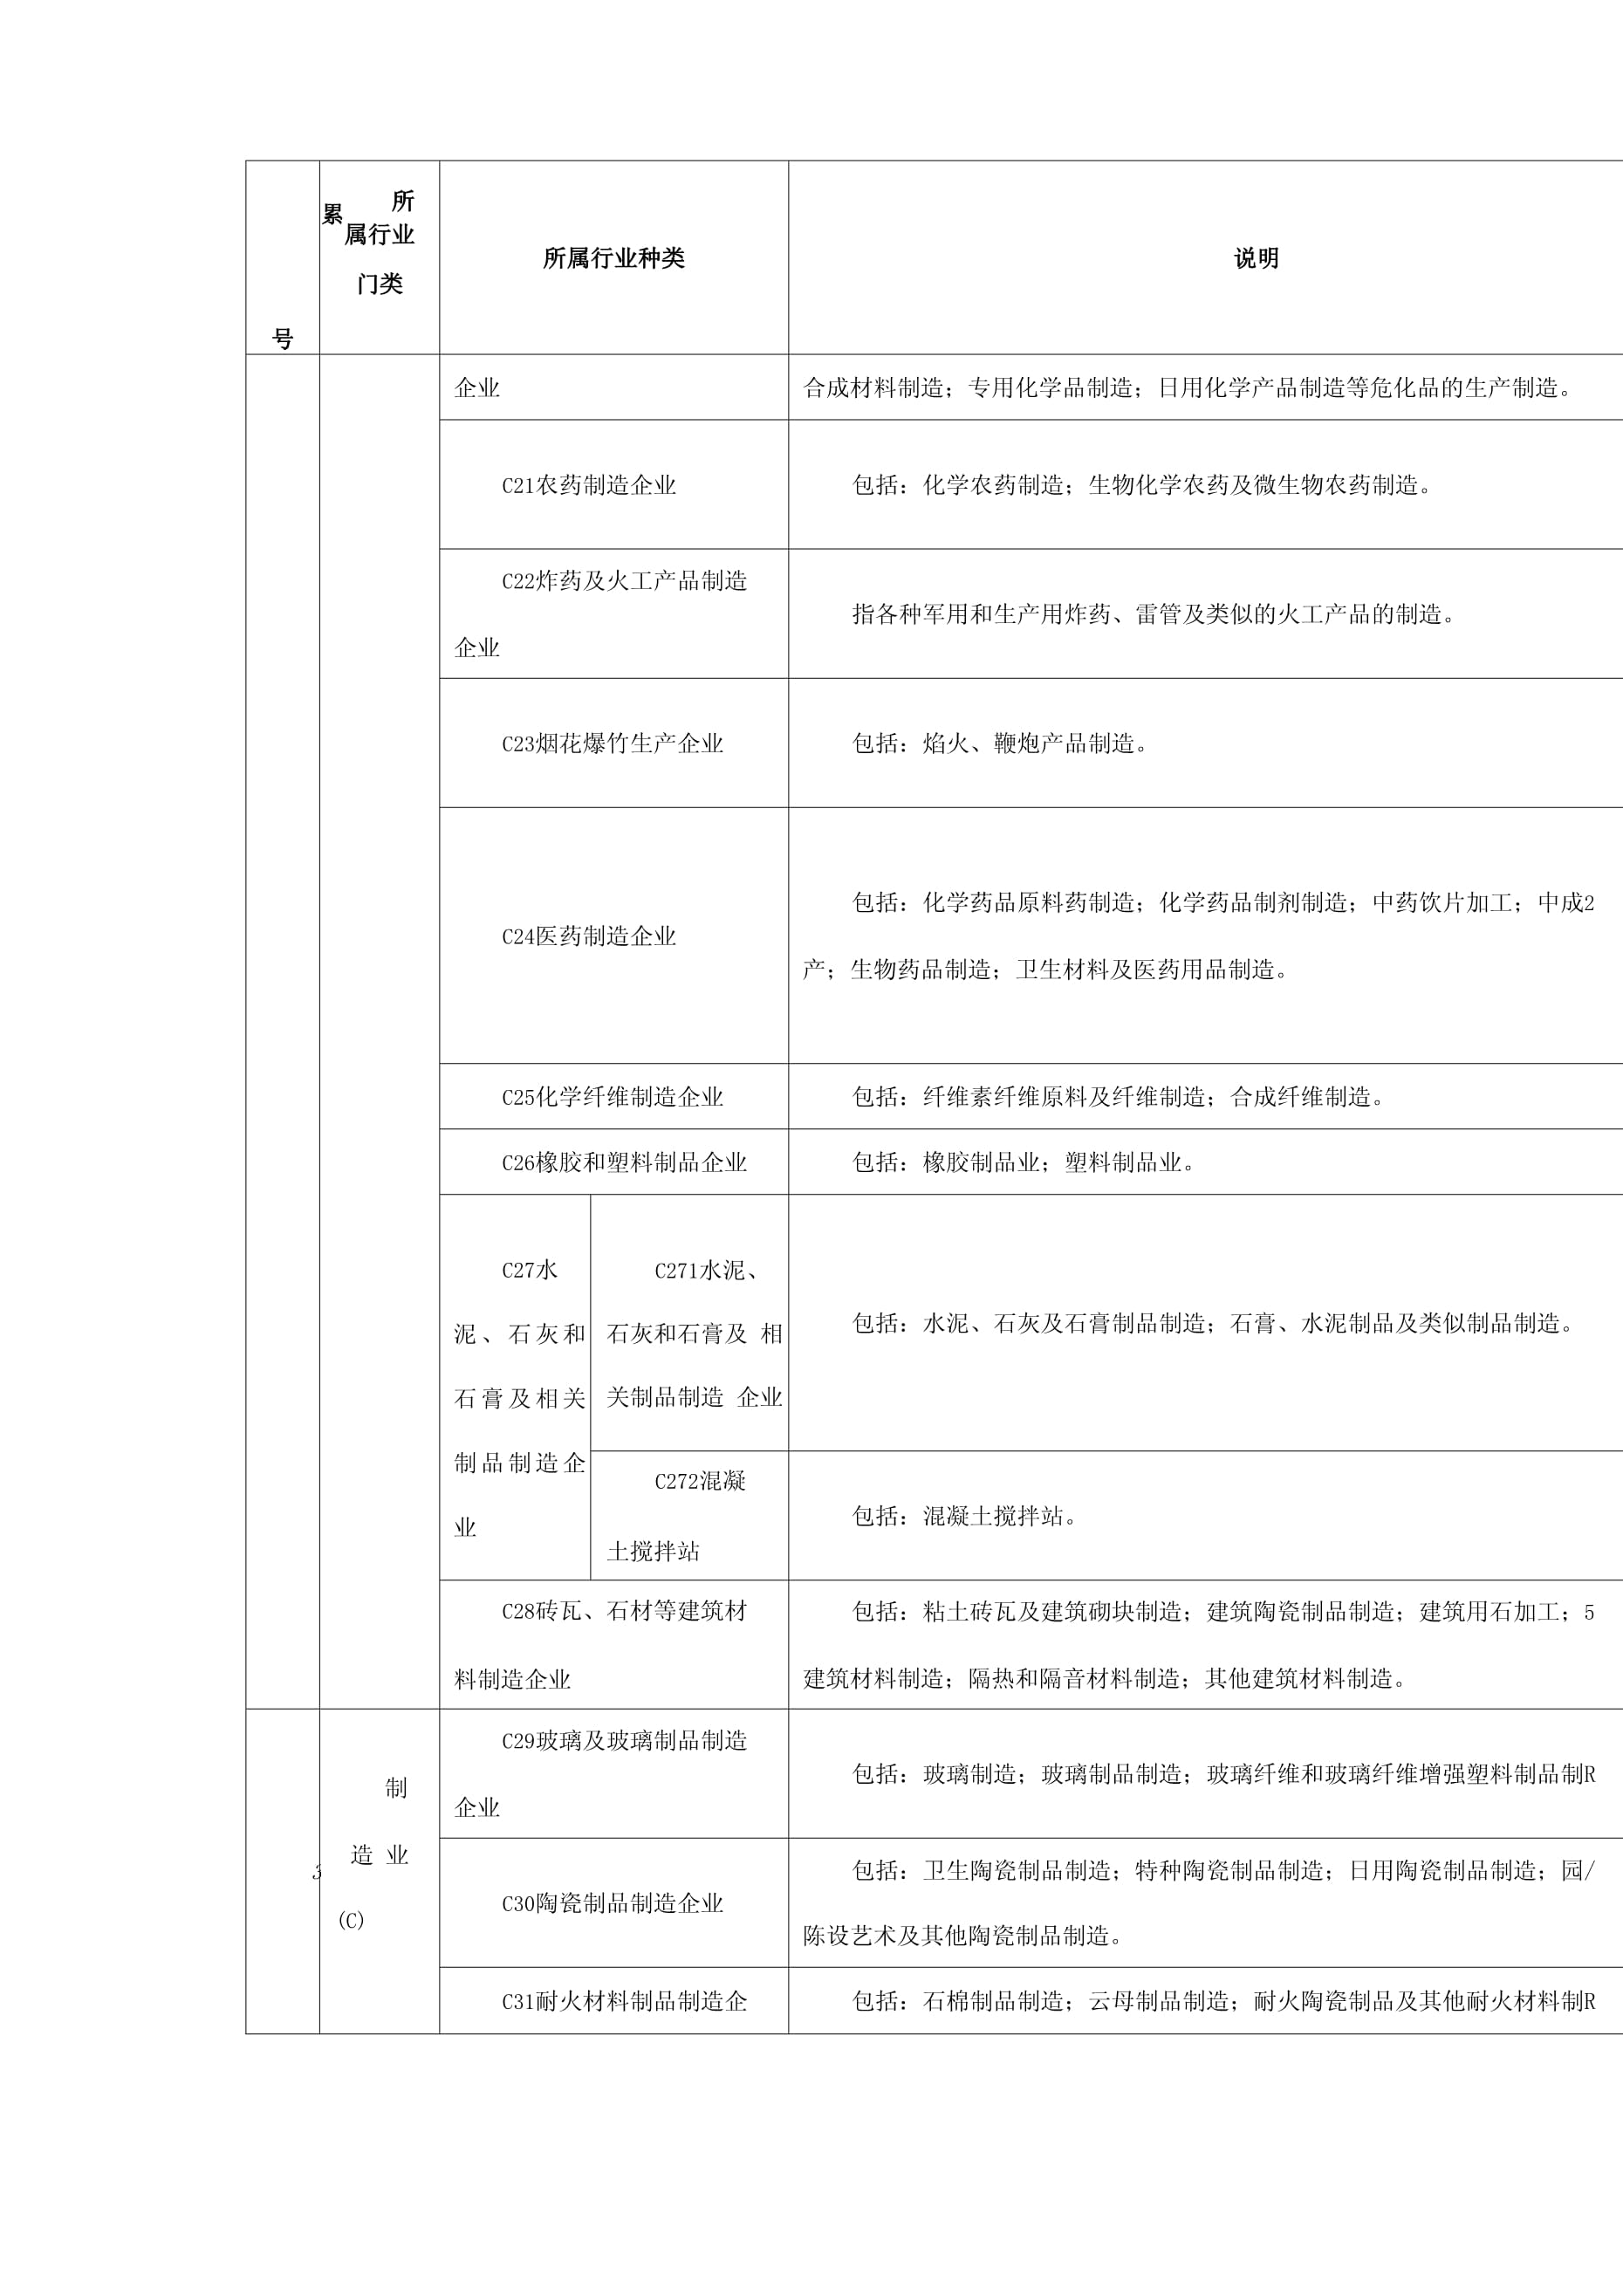 深圳生产经营单位国民经济行业分类明细表